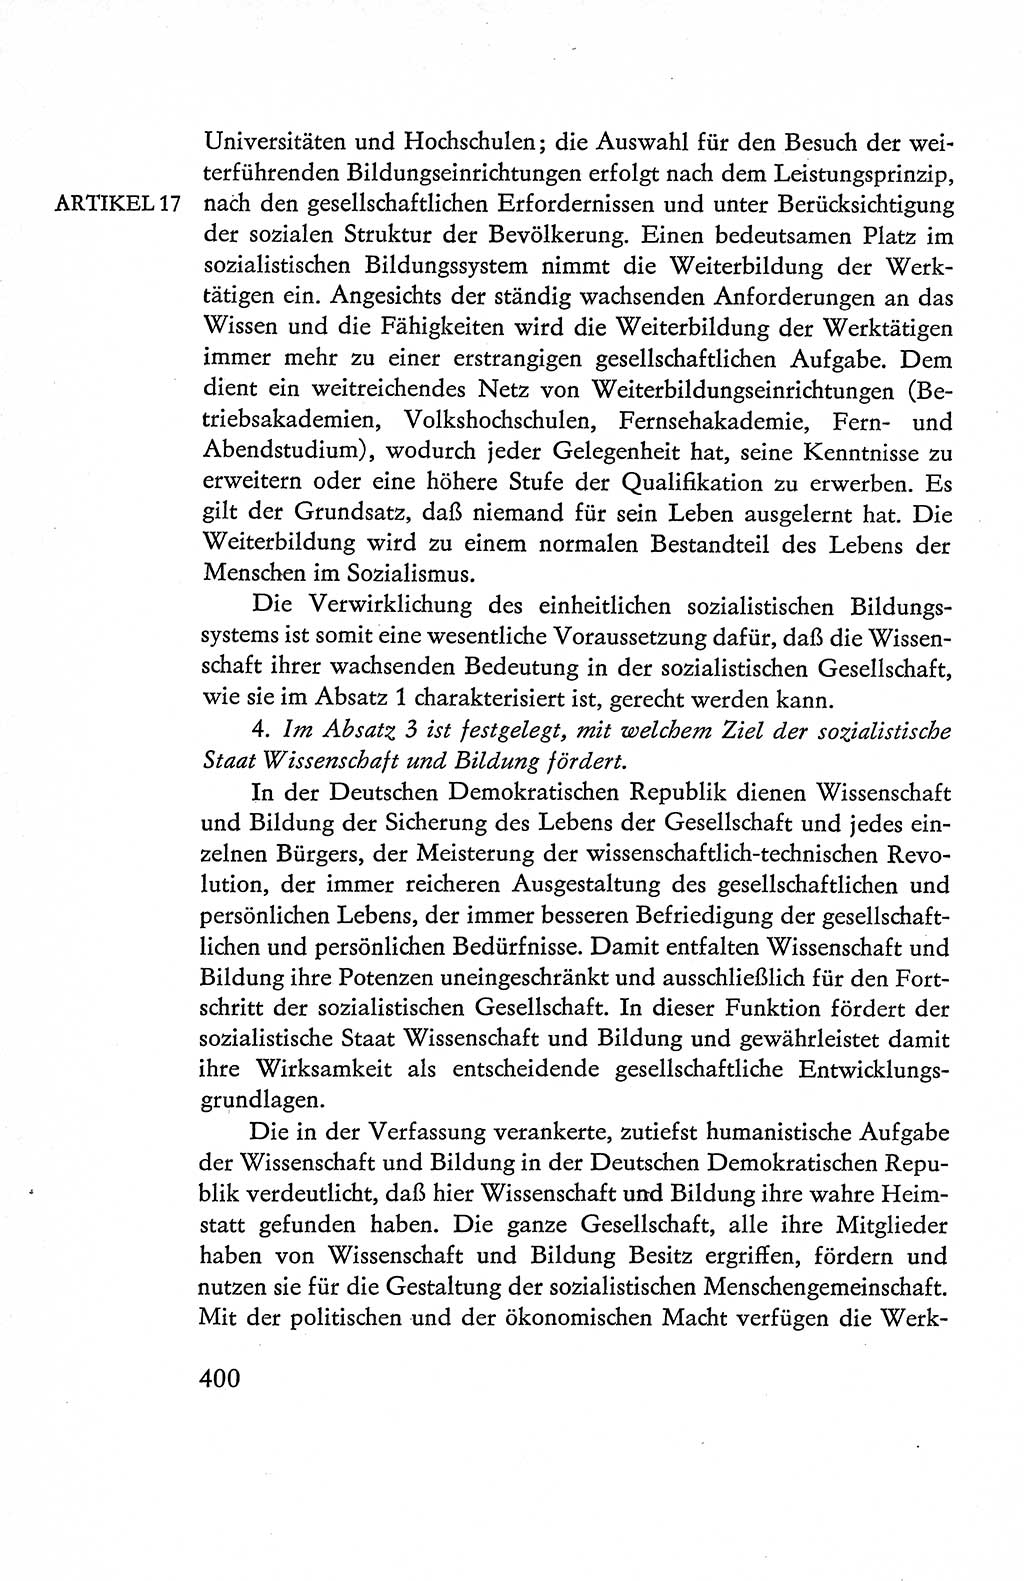 Verfassung der Deutschen Demokratischen Republik (DDR), Dokumente, Kommentar 1969, Band 1, Seite 400 (Verf. DDR Dok. Komm. 1969, Bd. 1, S. 400)